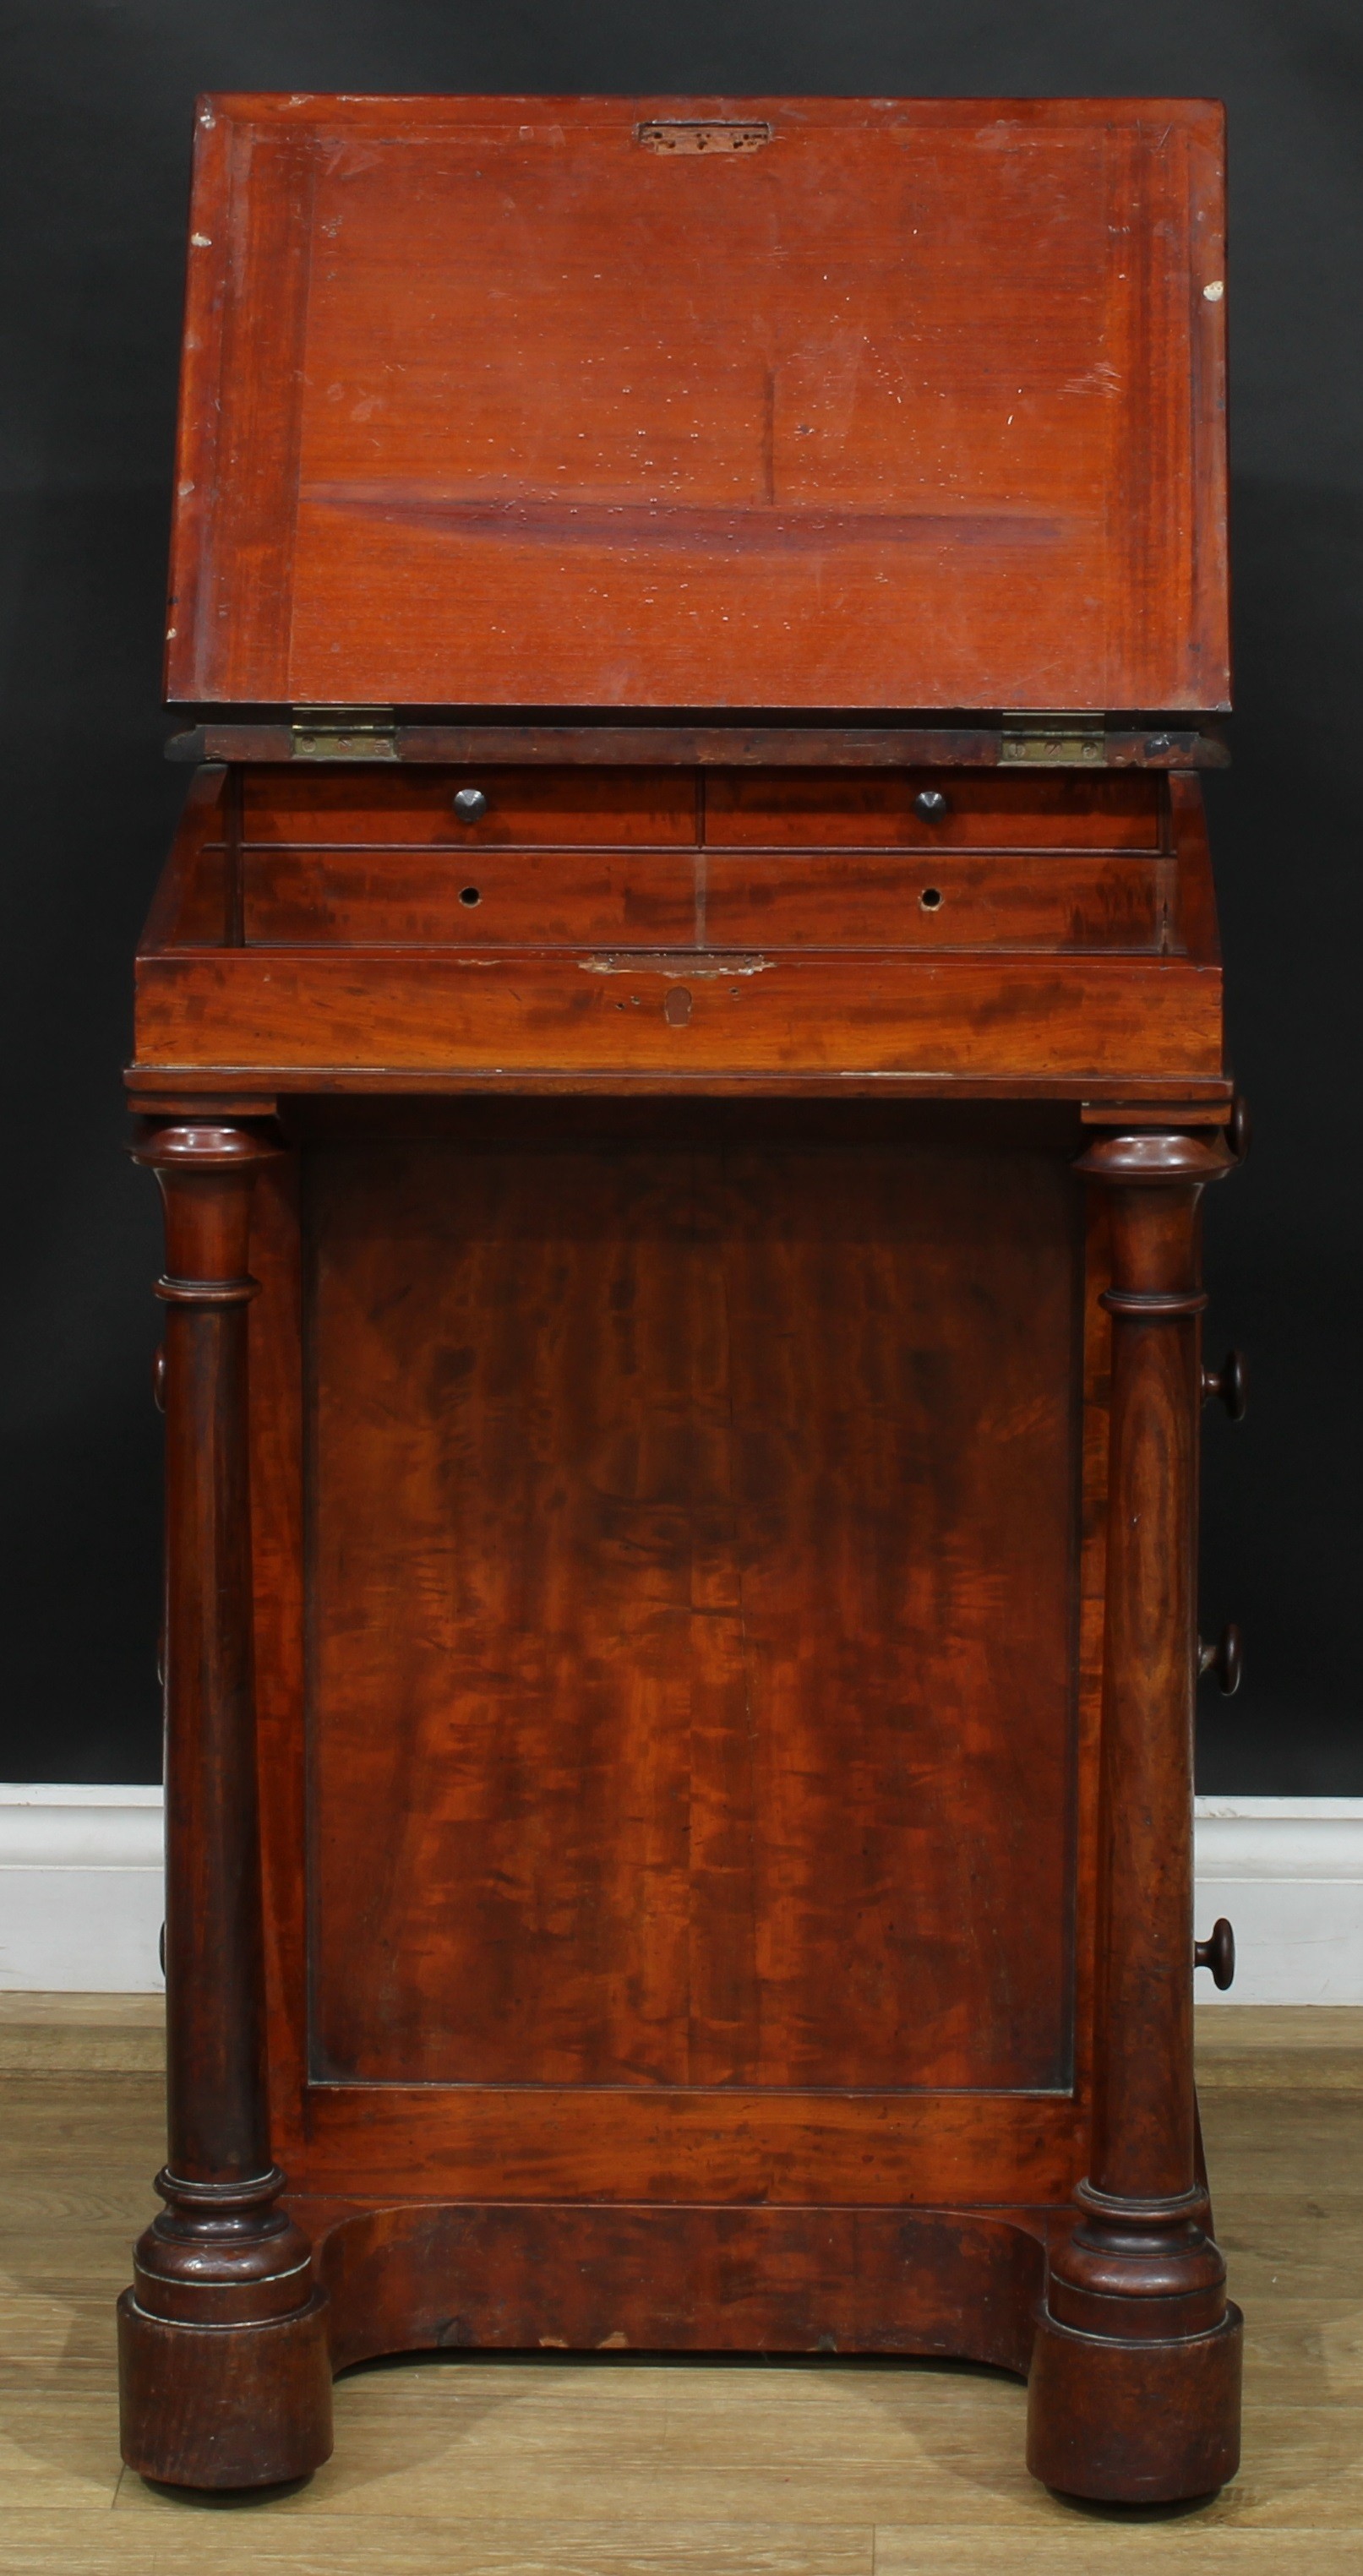 A 19th century mahogany Davenport desk, 83.5cm high, 54cm wide, 54cm deep - Image 2 of 4